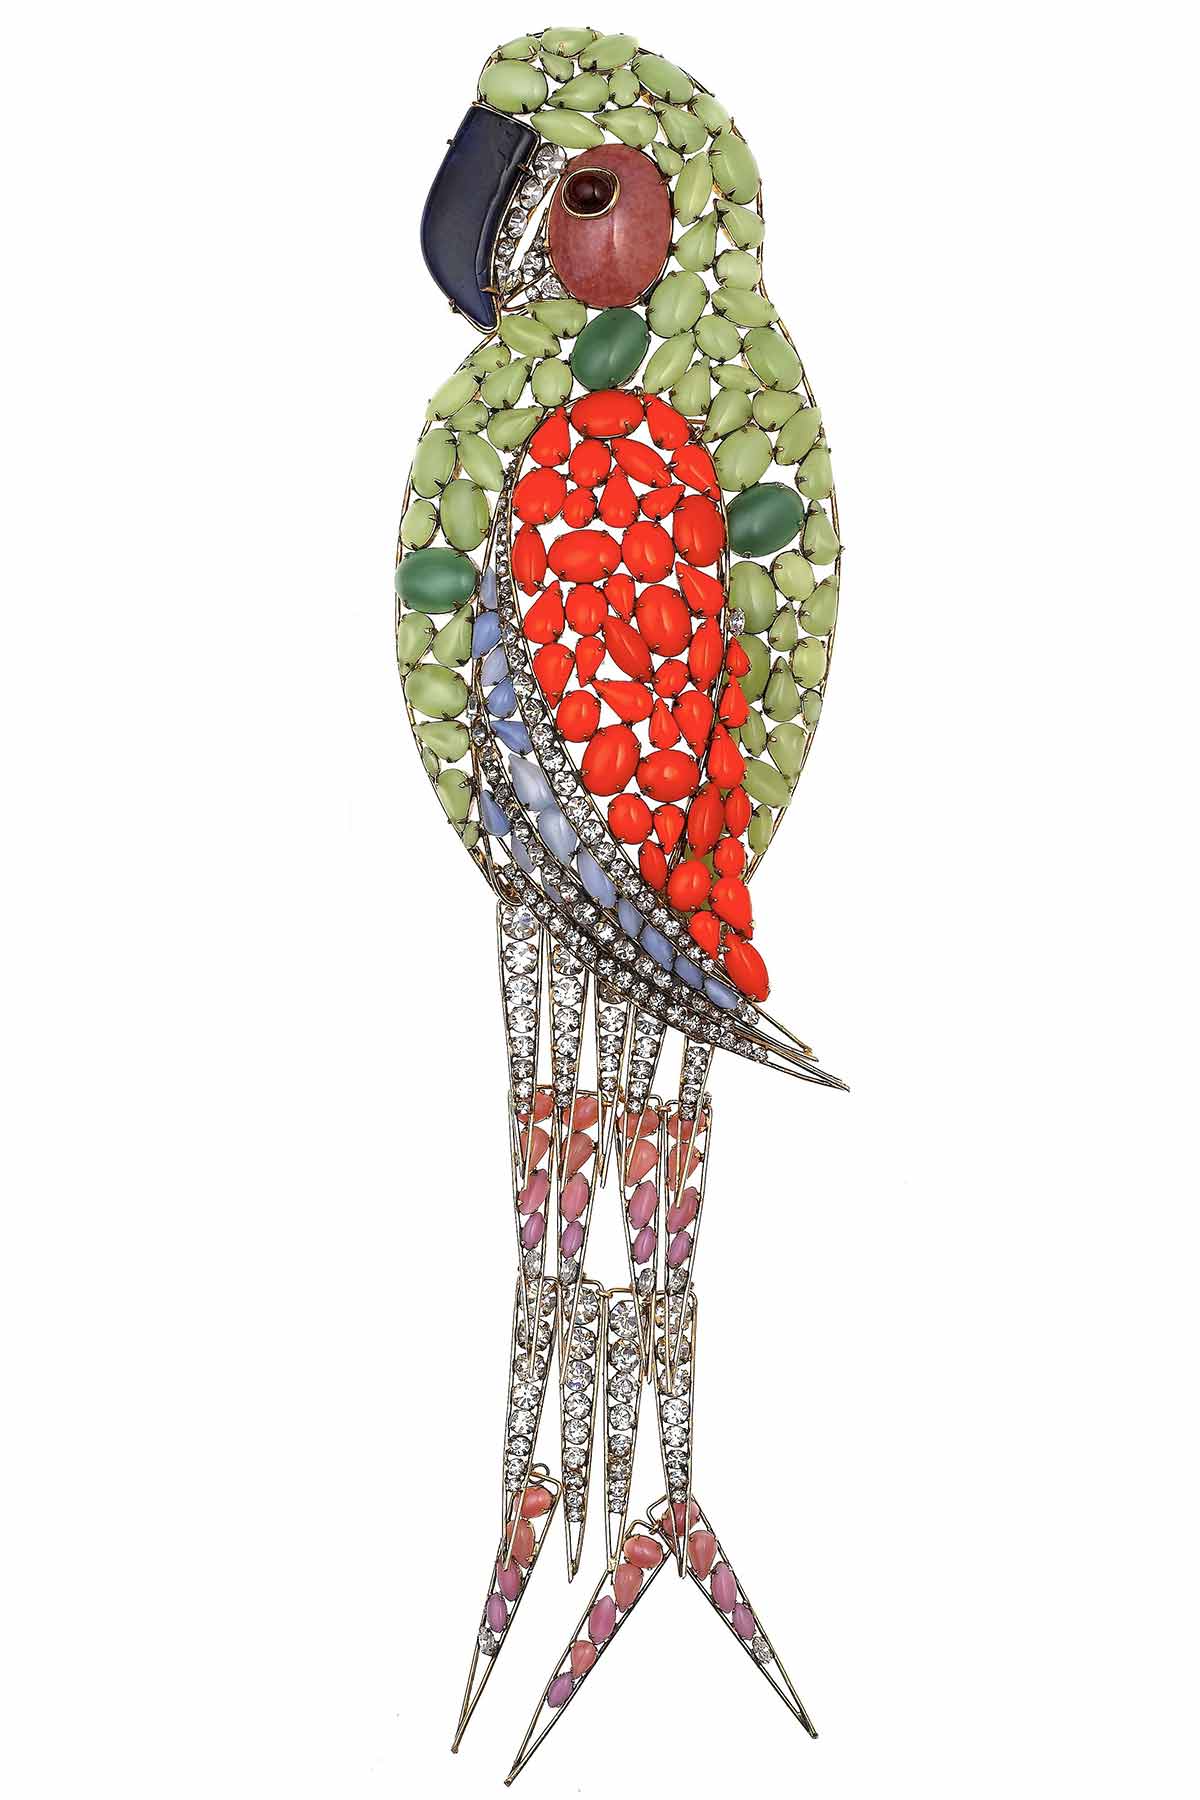 Parrot brooch, Iradji Moini for Oscar de la Renta, 1985-1990 ©Swarovski Corporate Archive